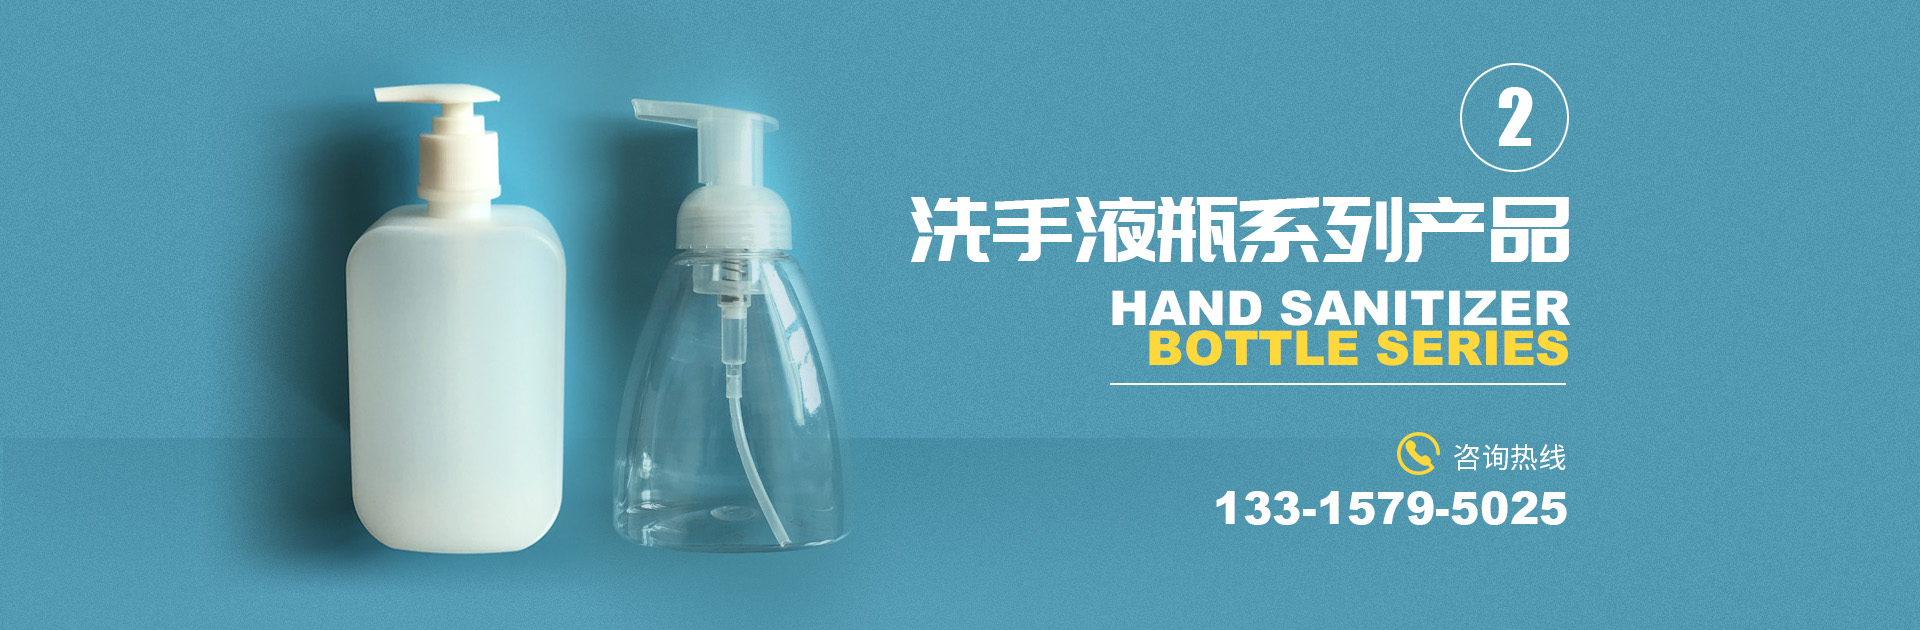 滄州市鳳濤塑料包裝制品有限公司